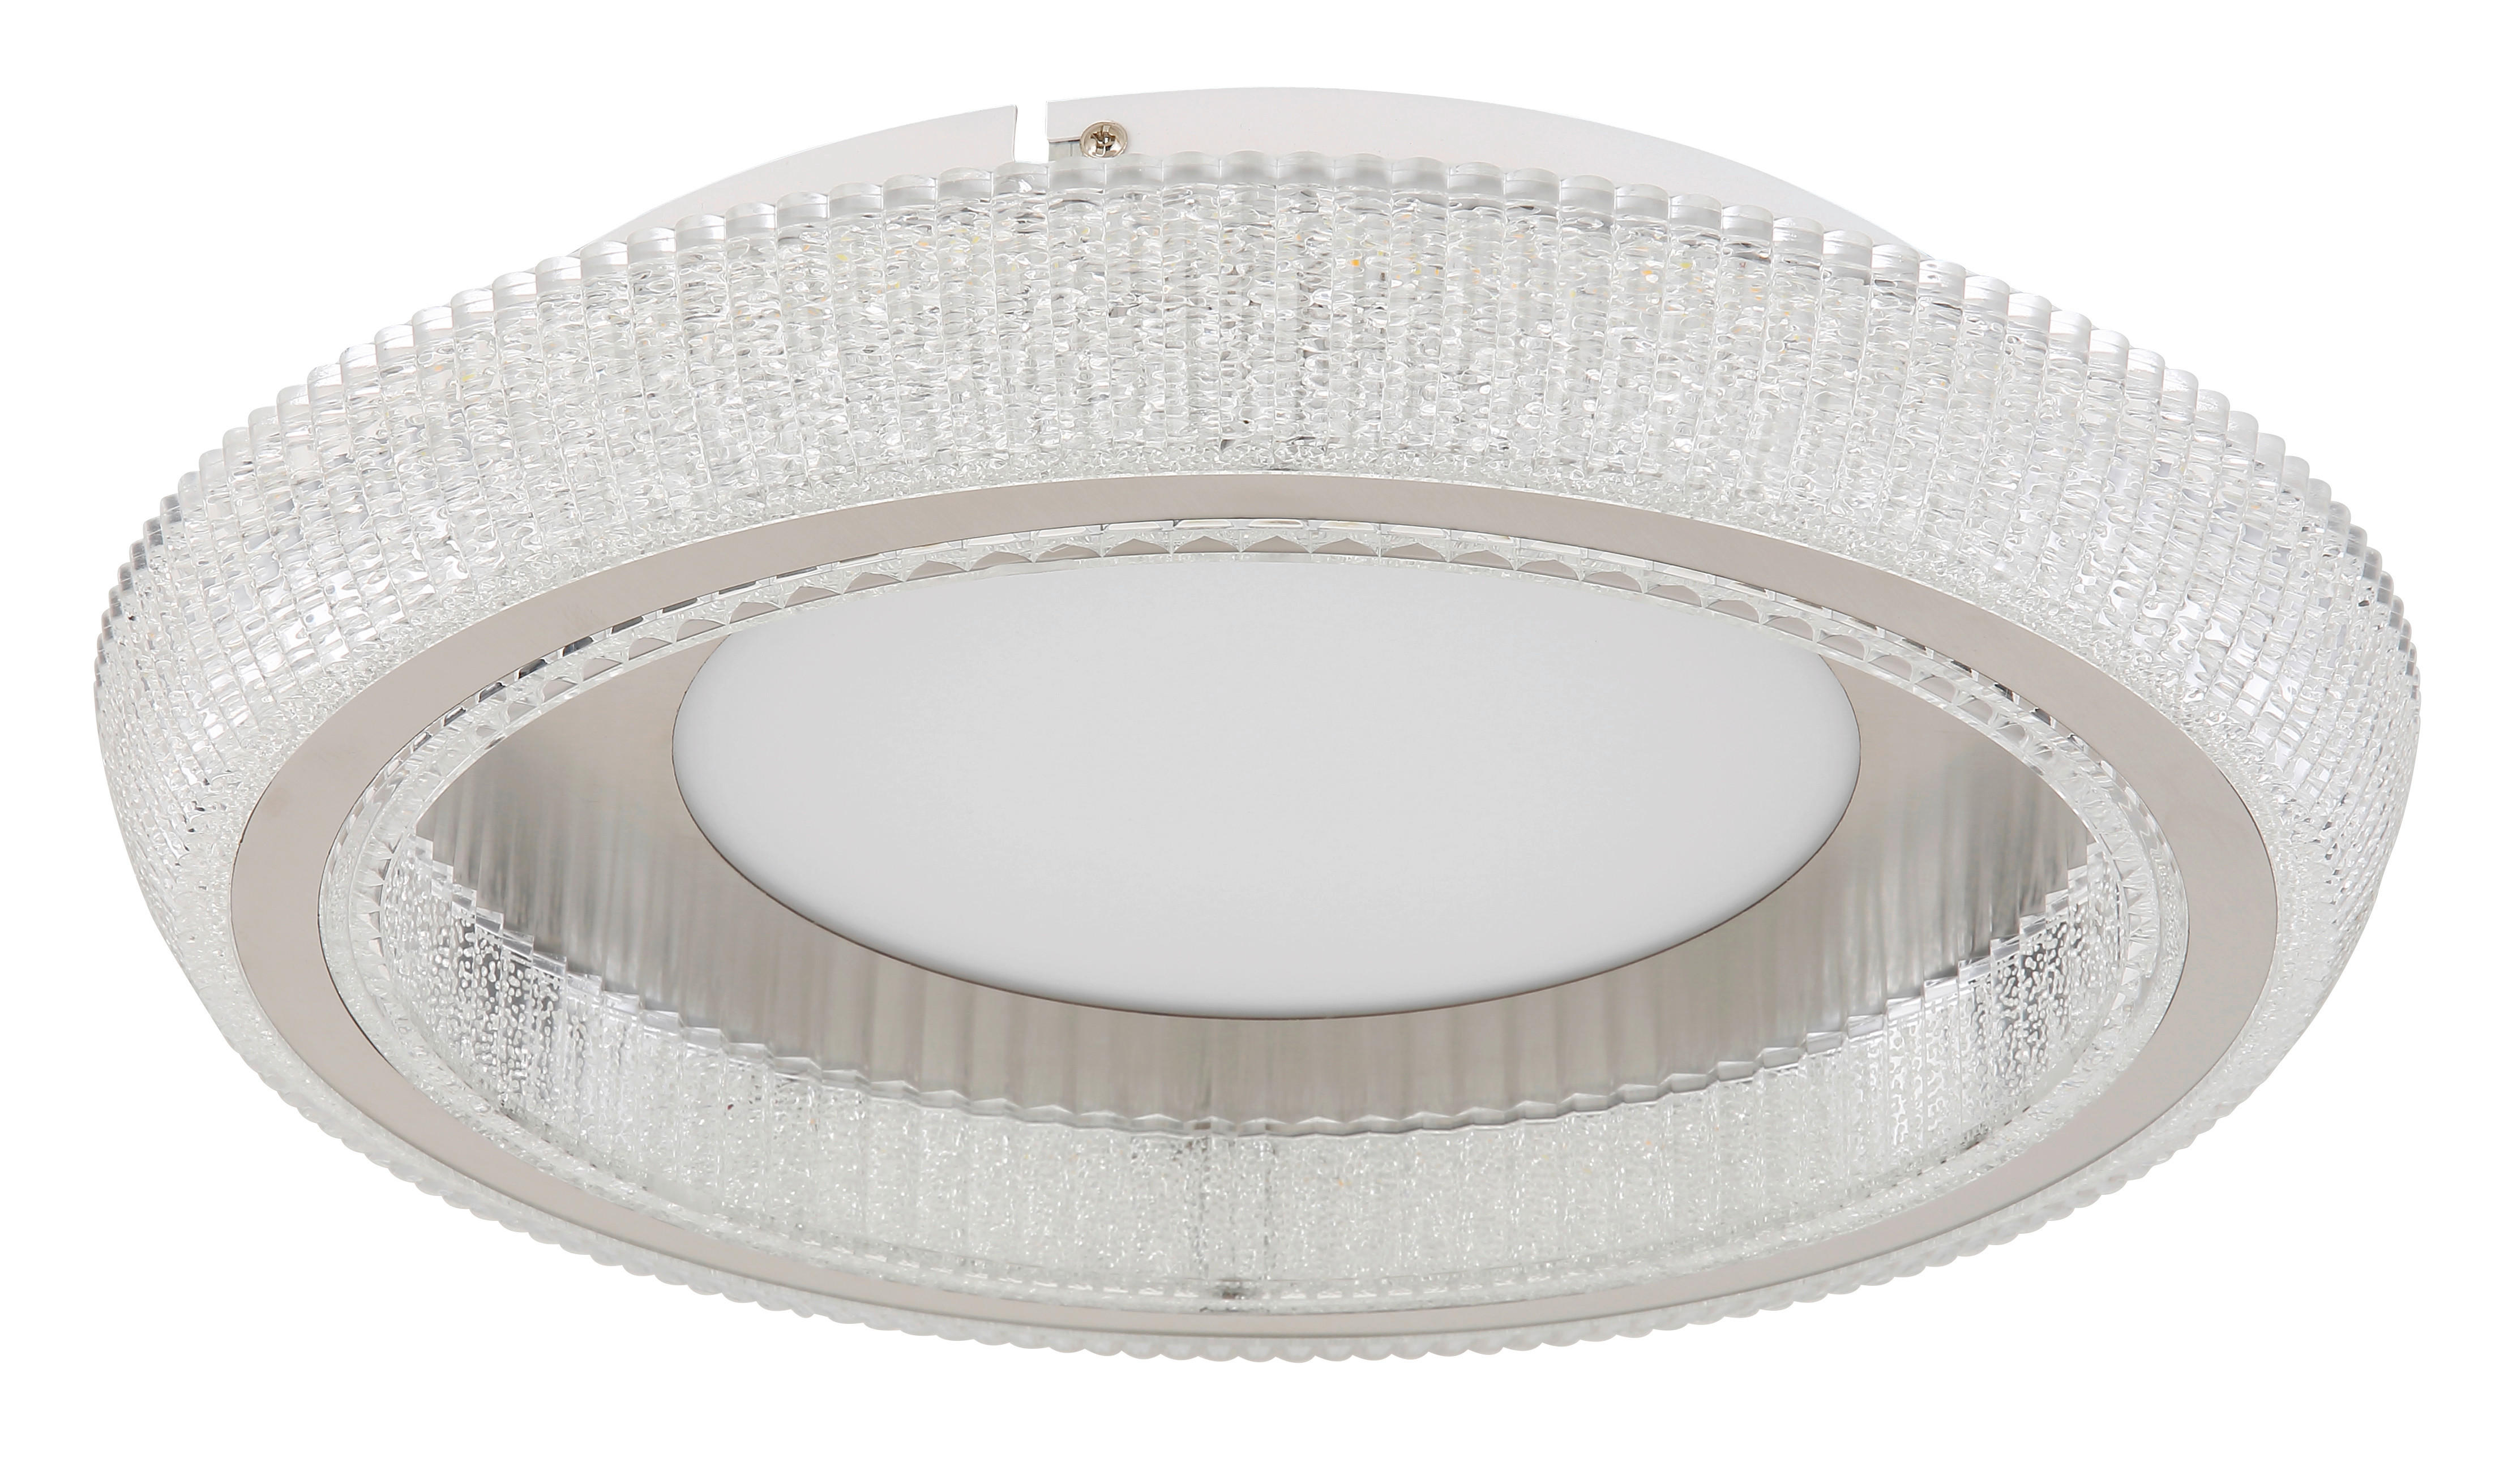 LED-DECKENLEUCHTE 40/8,5 cm   - Klar/Opal, Design, Kunststoff/Metall (40/8,5cm) - Globo